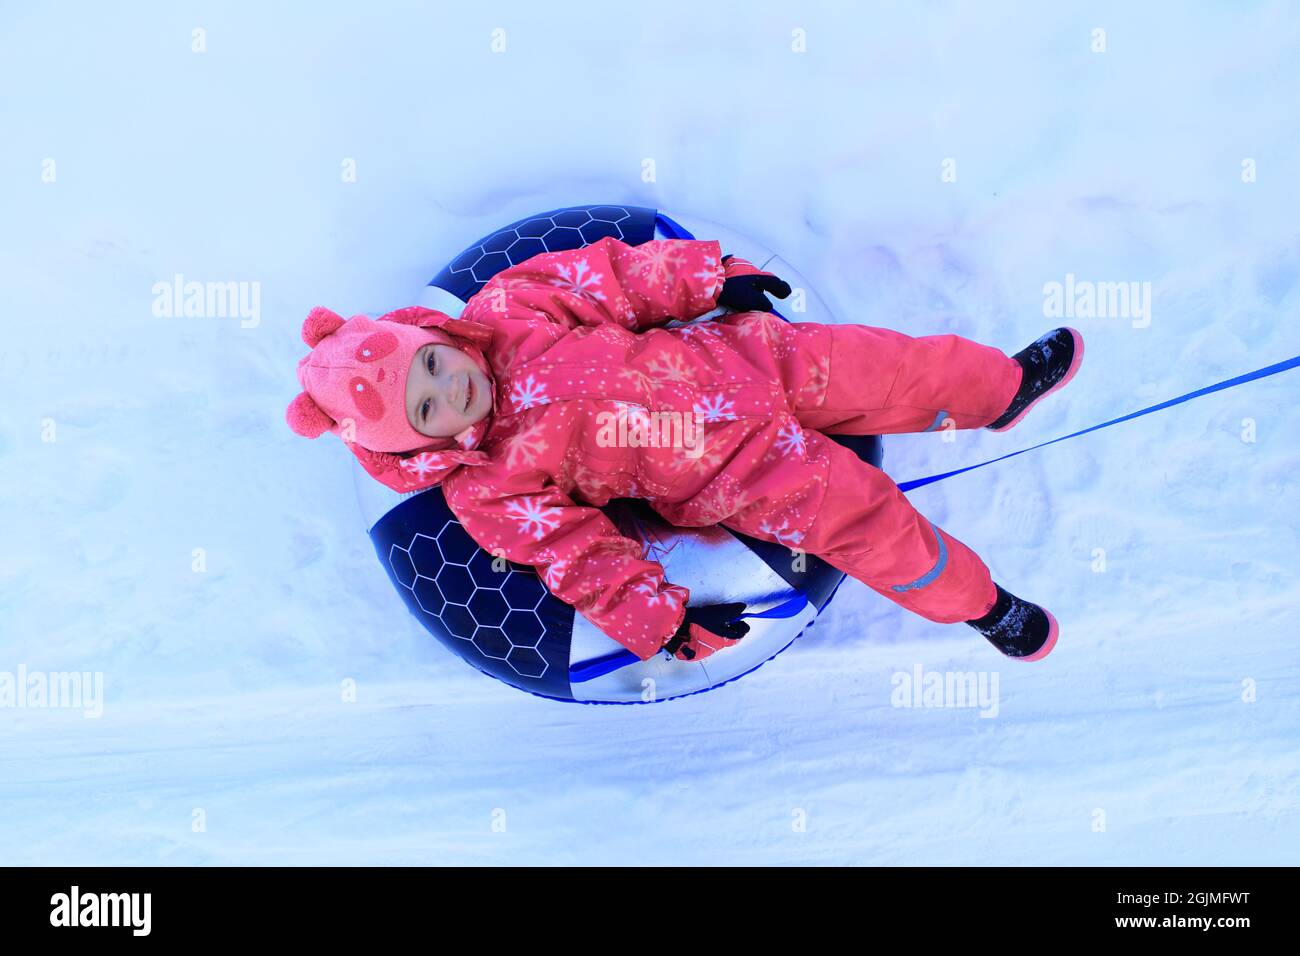 Une fille dans une combinaison d'hiver est assise sur un tubing. L'enfant glisse dans la neige. Banque D'Images